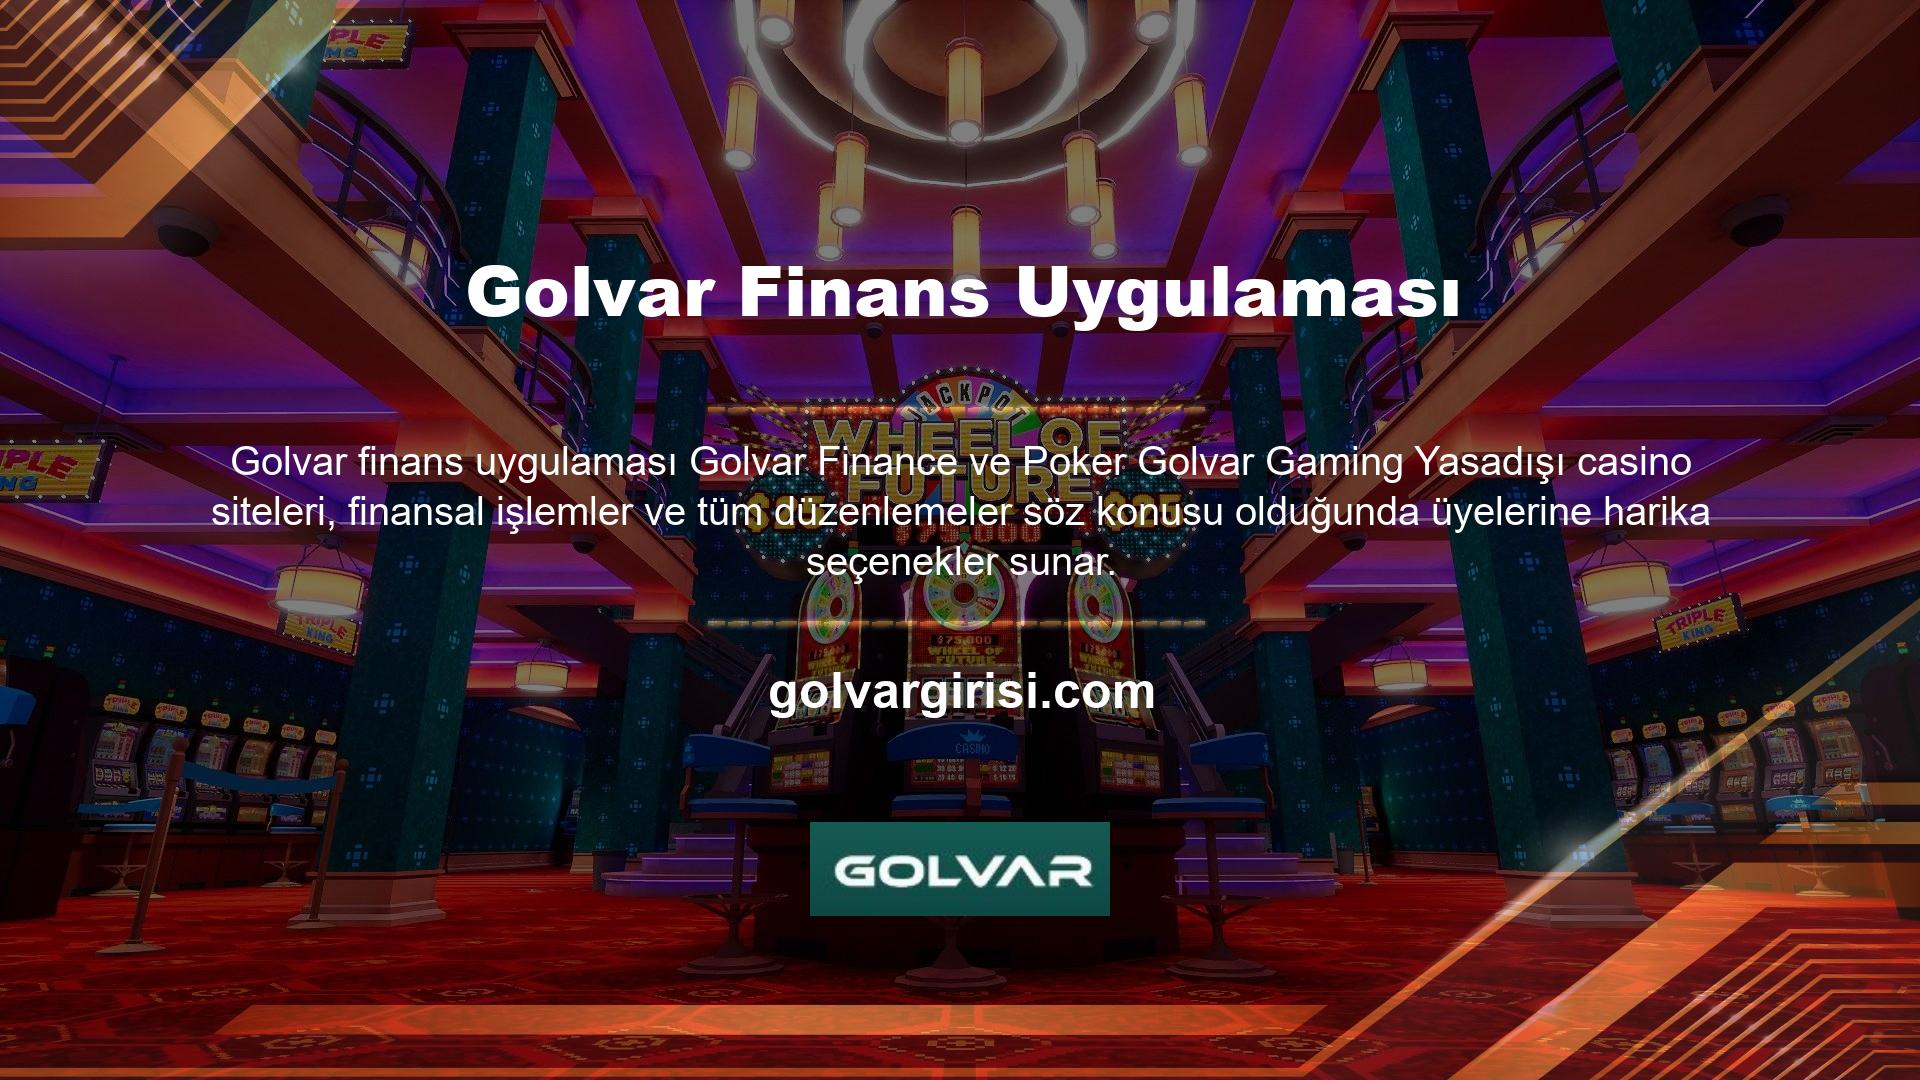 Golvar Finance and Poker, üyelere yaptıkları işlemlere göre benzer bonuslar alma fırsatı sunarak güvenilir ve profesyonel hizmet sunmaktadır